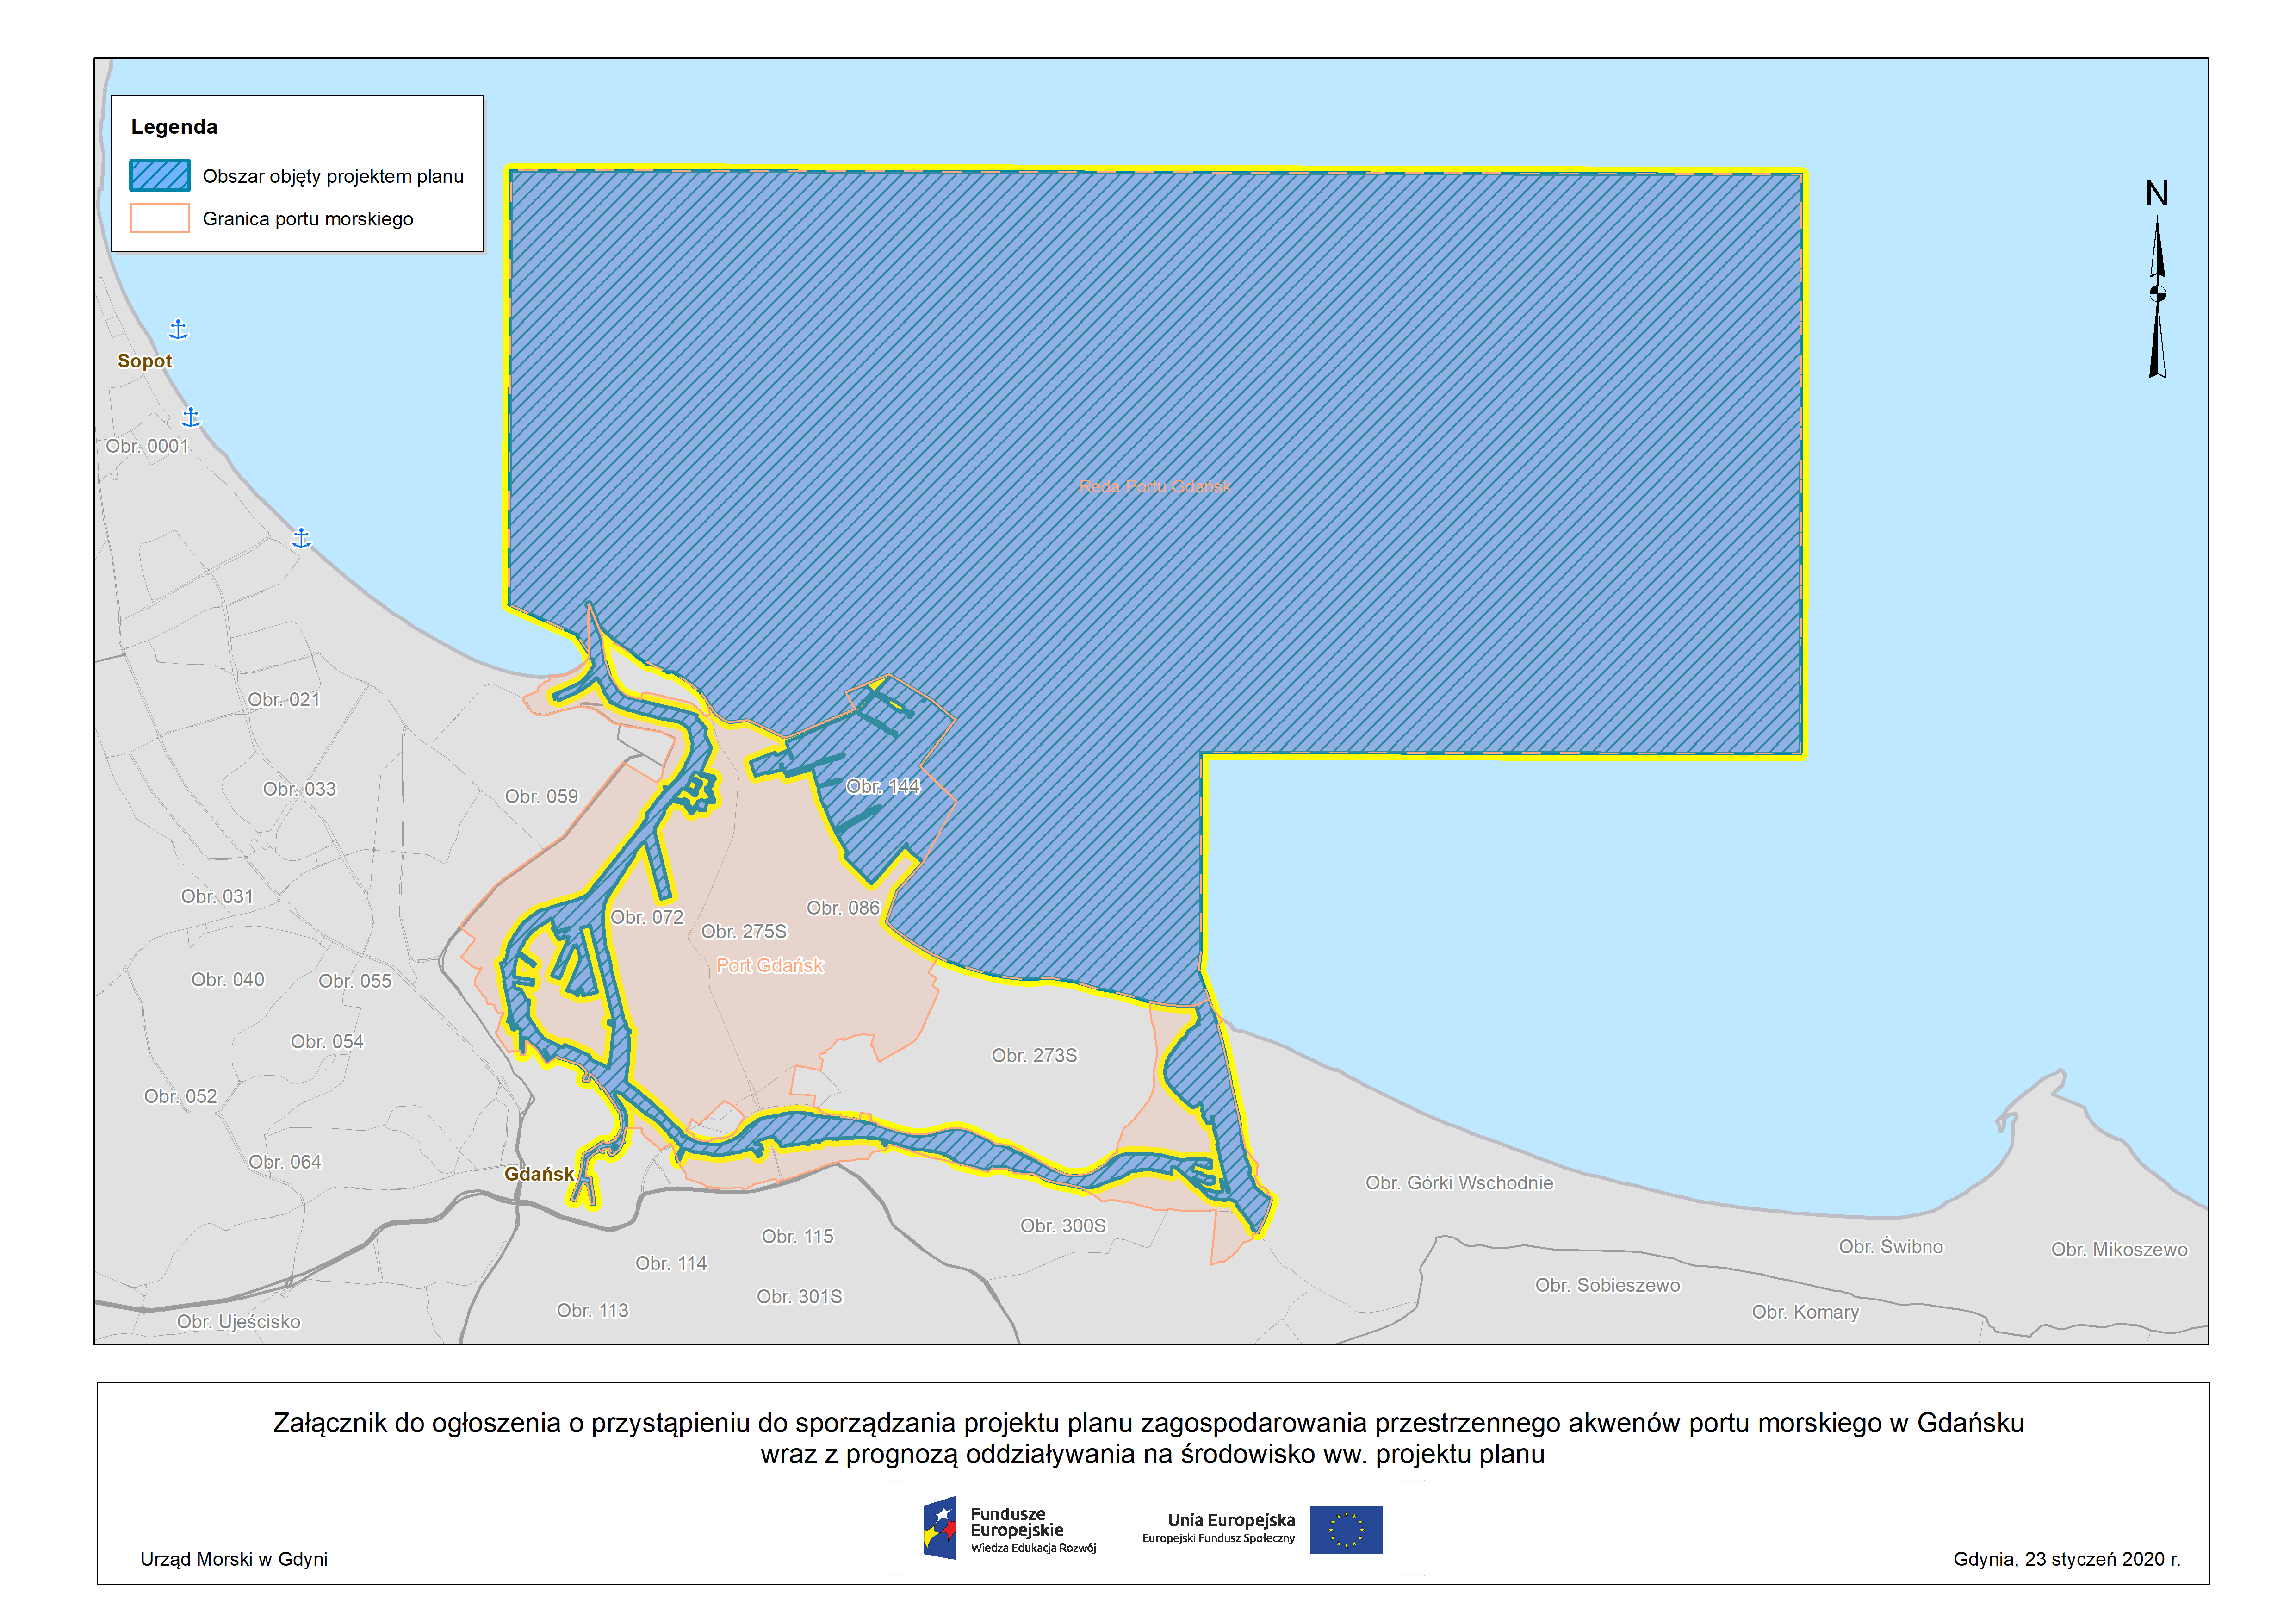 Ogłoszenie o przystąpieniu do sporządzania projektu planu zagospodarowania przestrzennego akwenów portu morskiego w Gdańsku